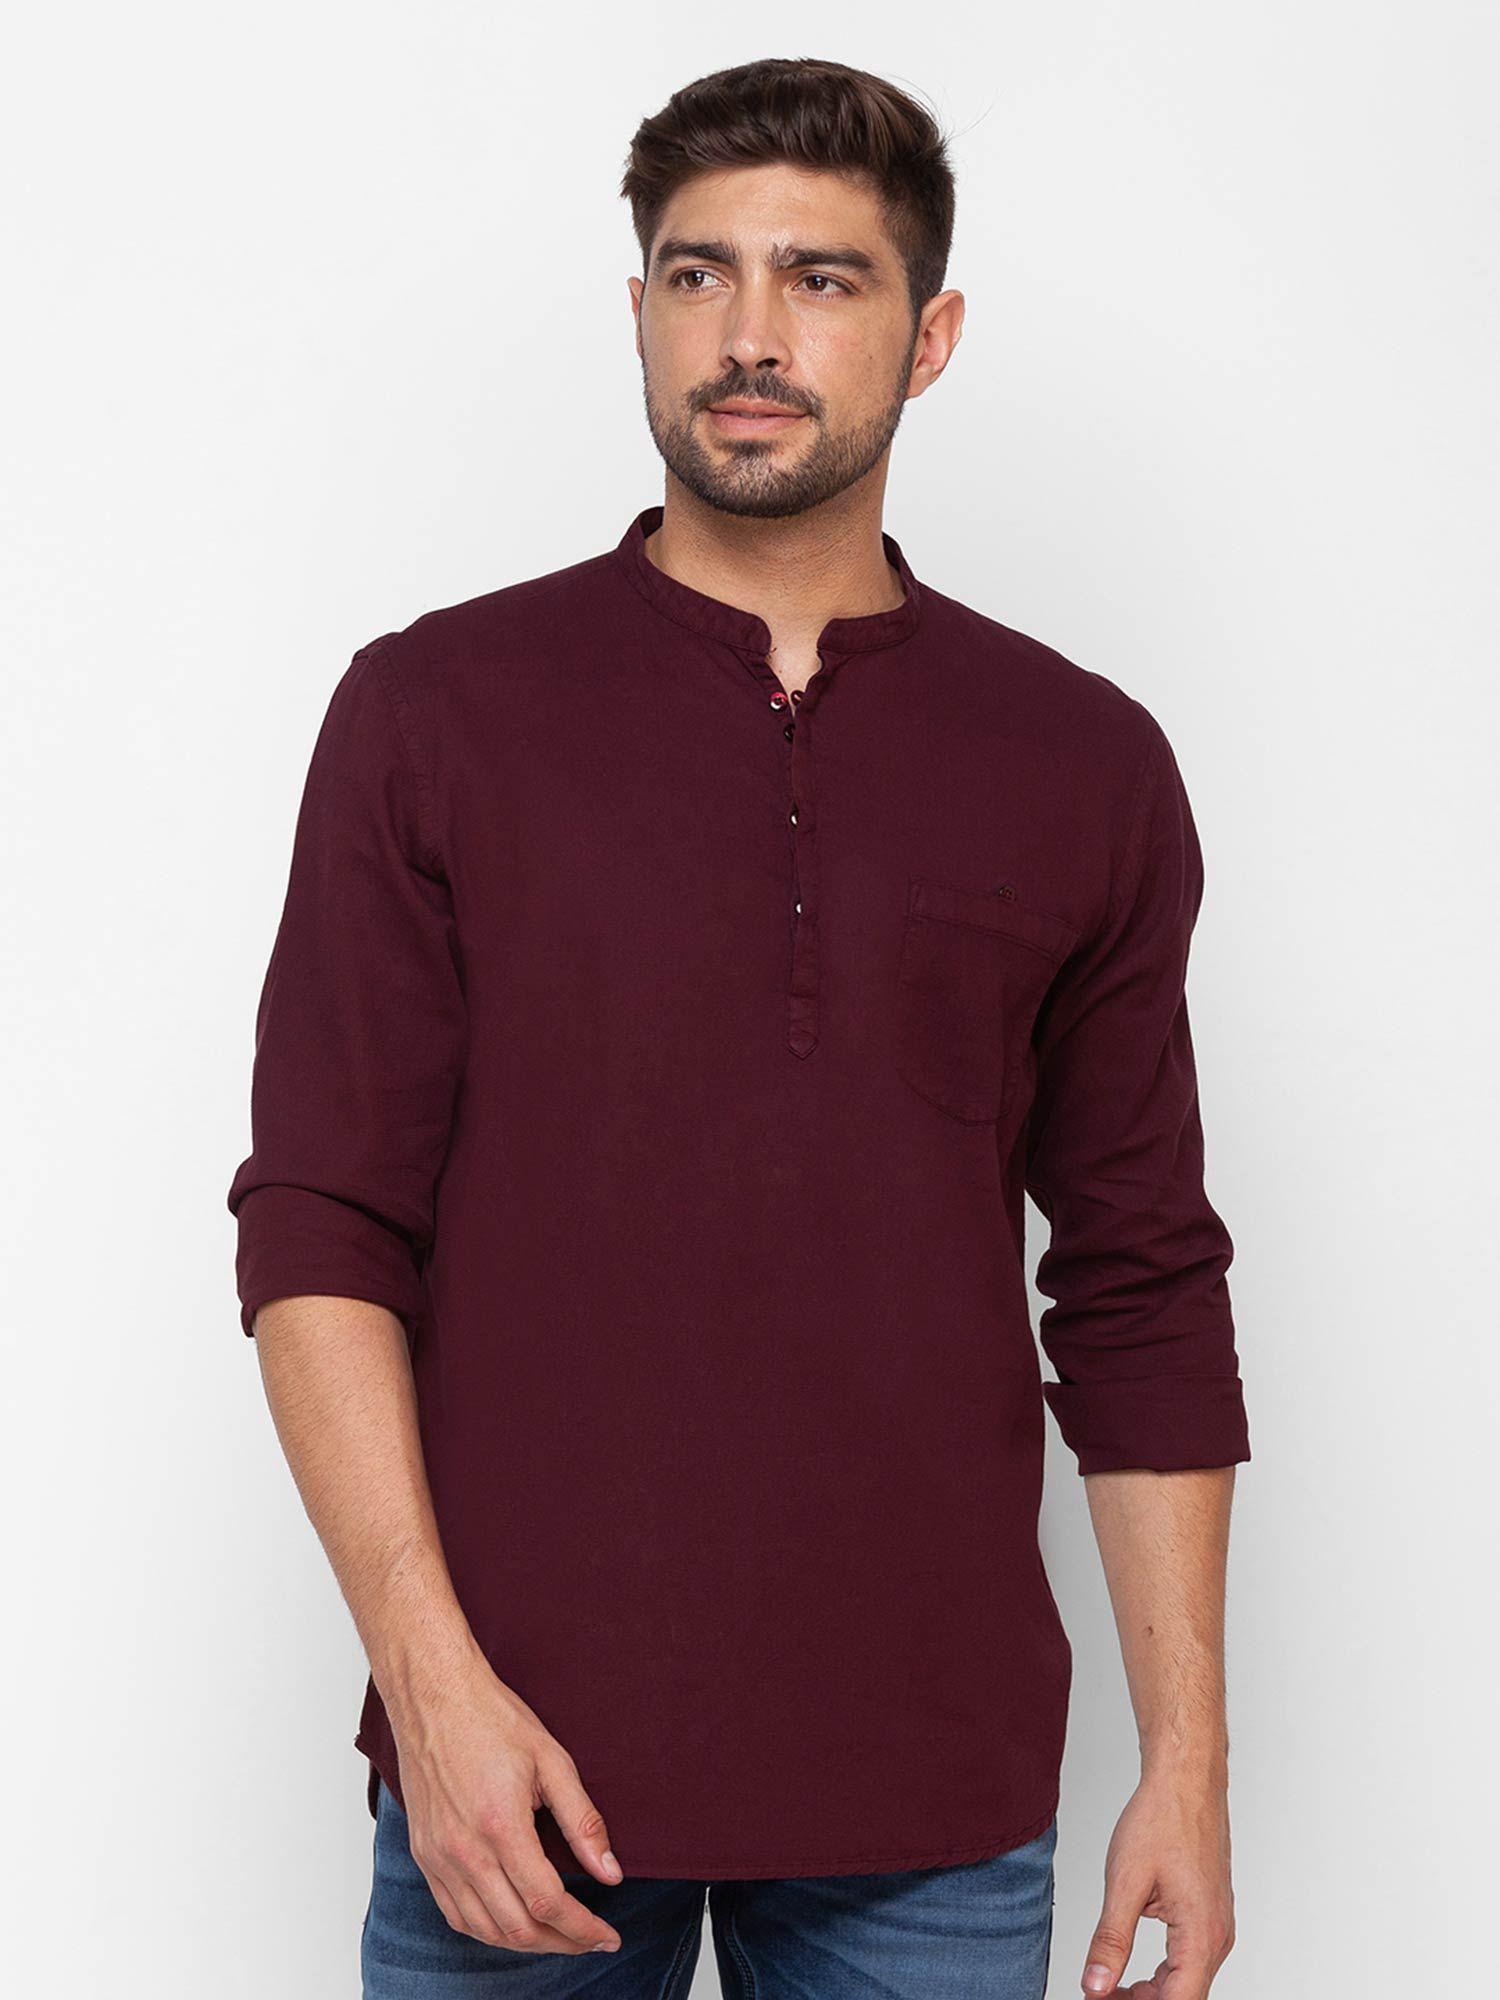 wine red cotton full sleeve plain shirt for men